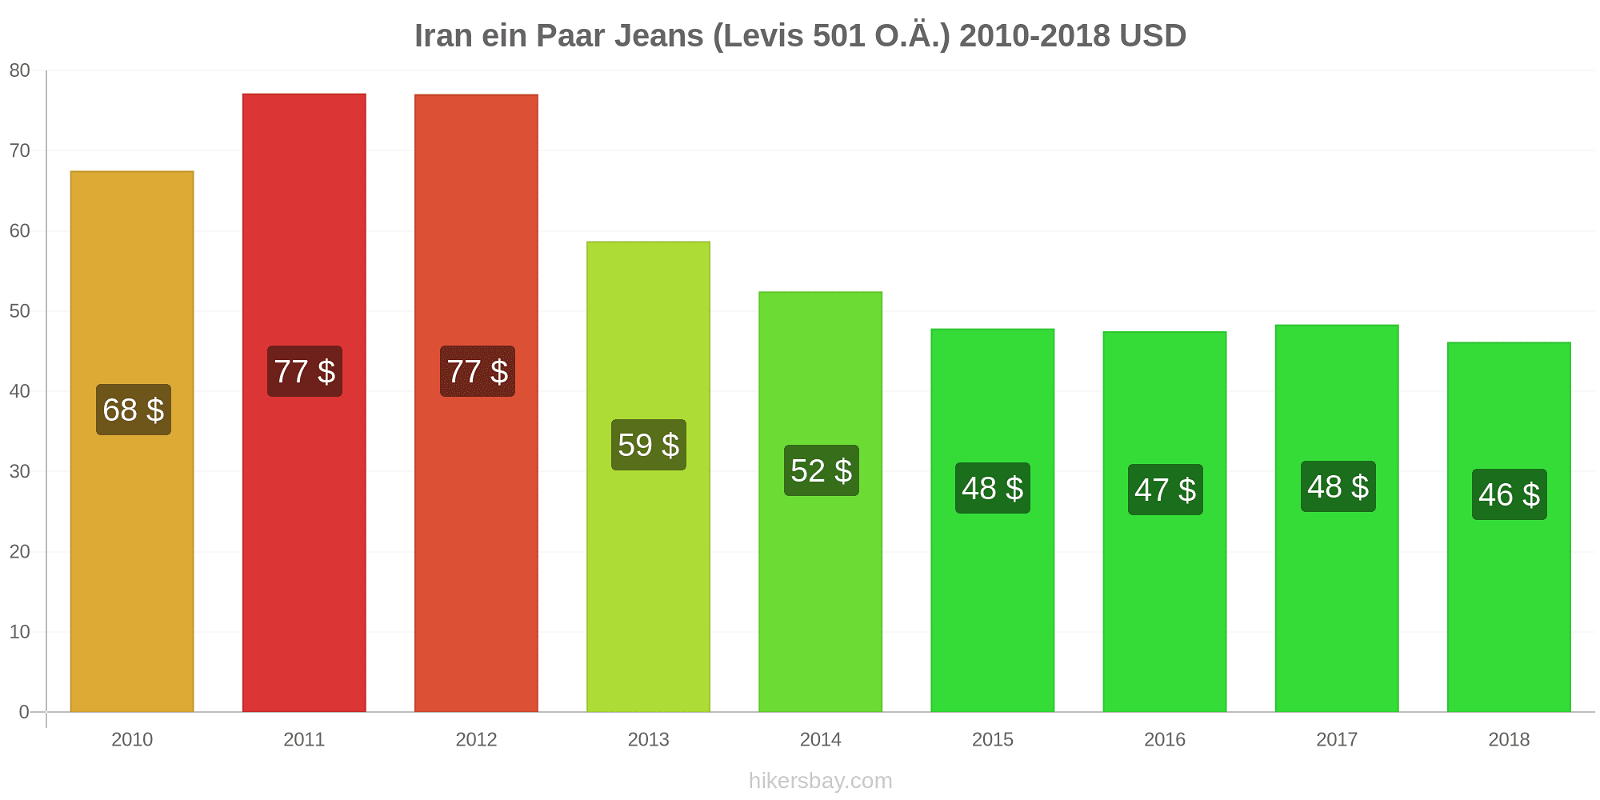 Iran Preisänderungen 1 Paar Jeans (Levis 501 oder ähnlich) hikersbay.com